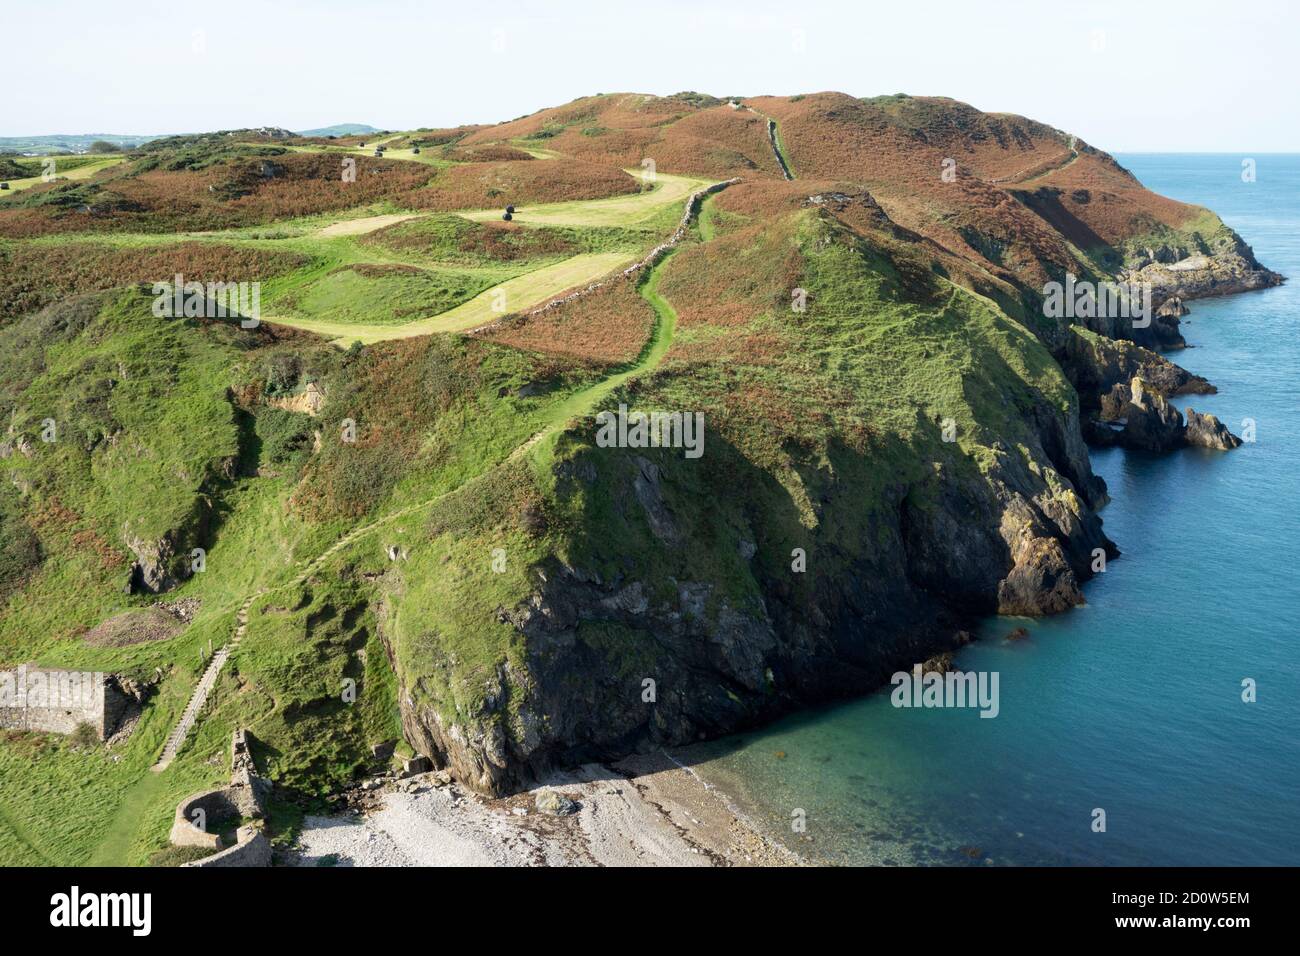 Il Sentiero costiero Anglesey, che fa parte del Sentiero costiero gallese a nord dell'isola. Foto Stock